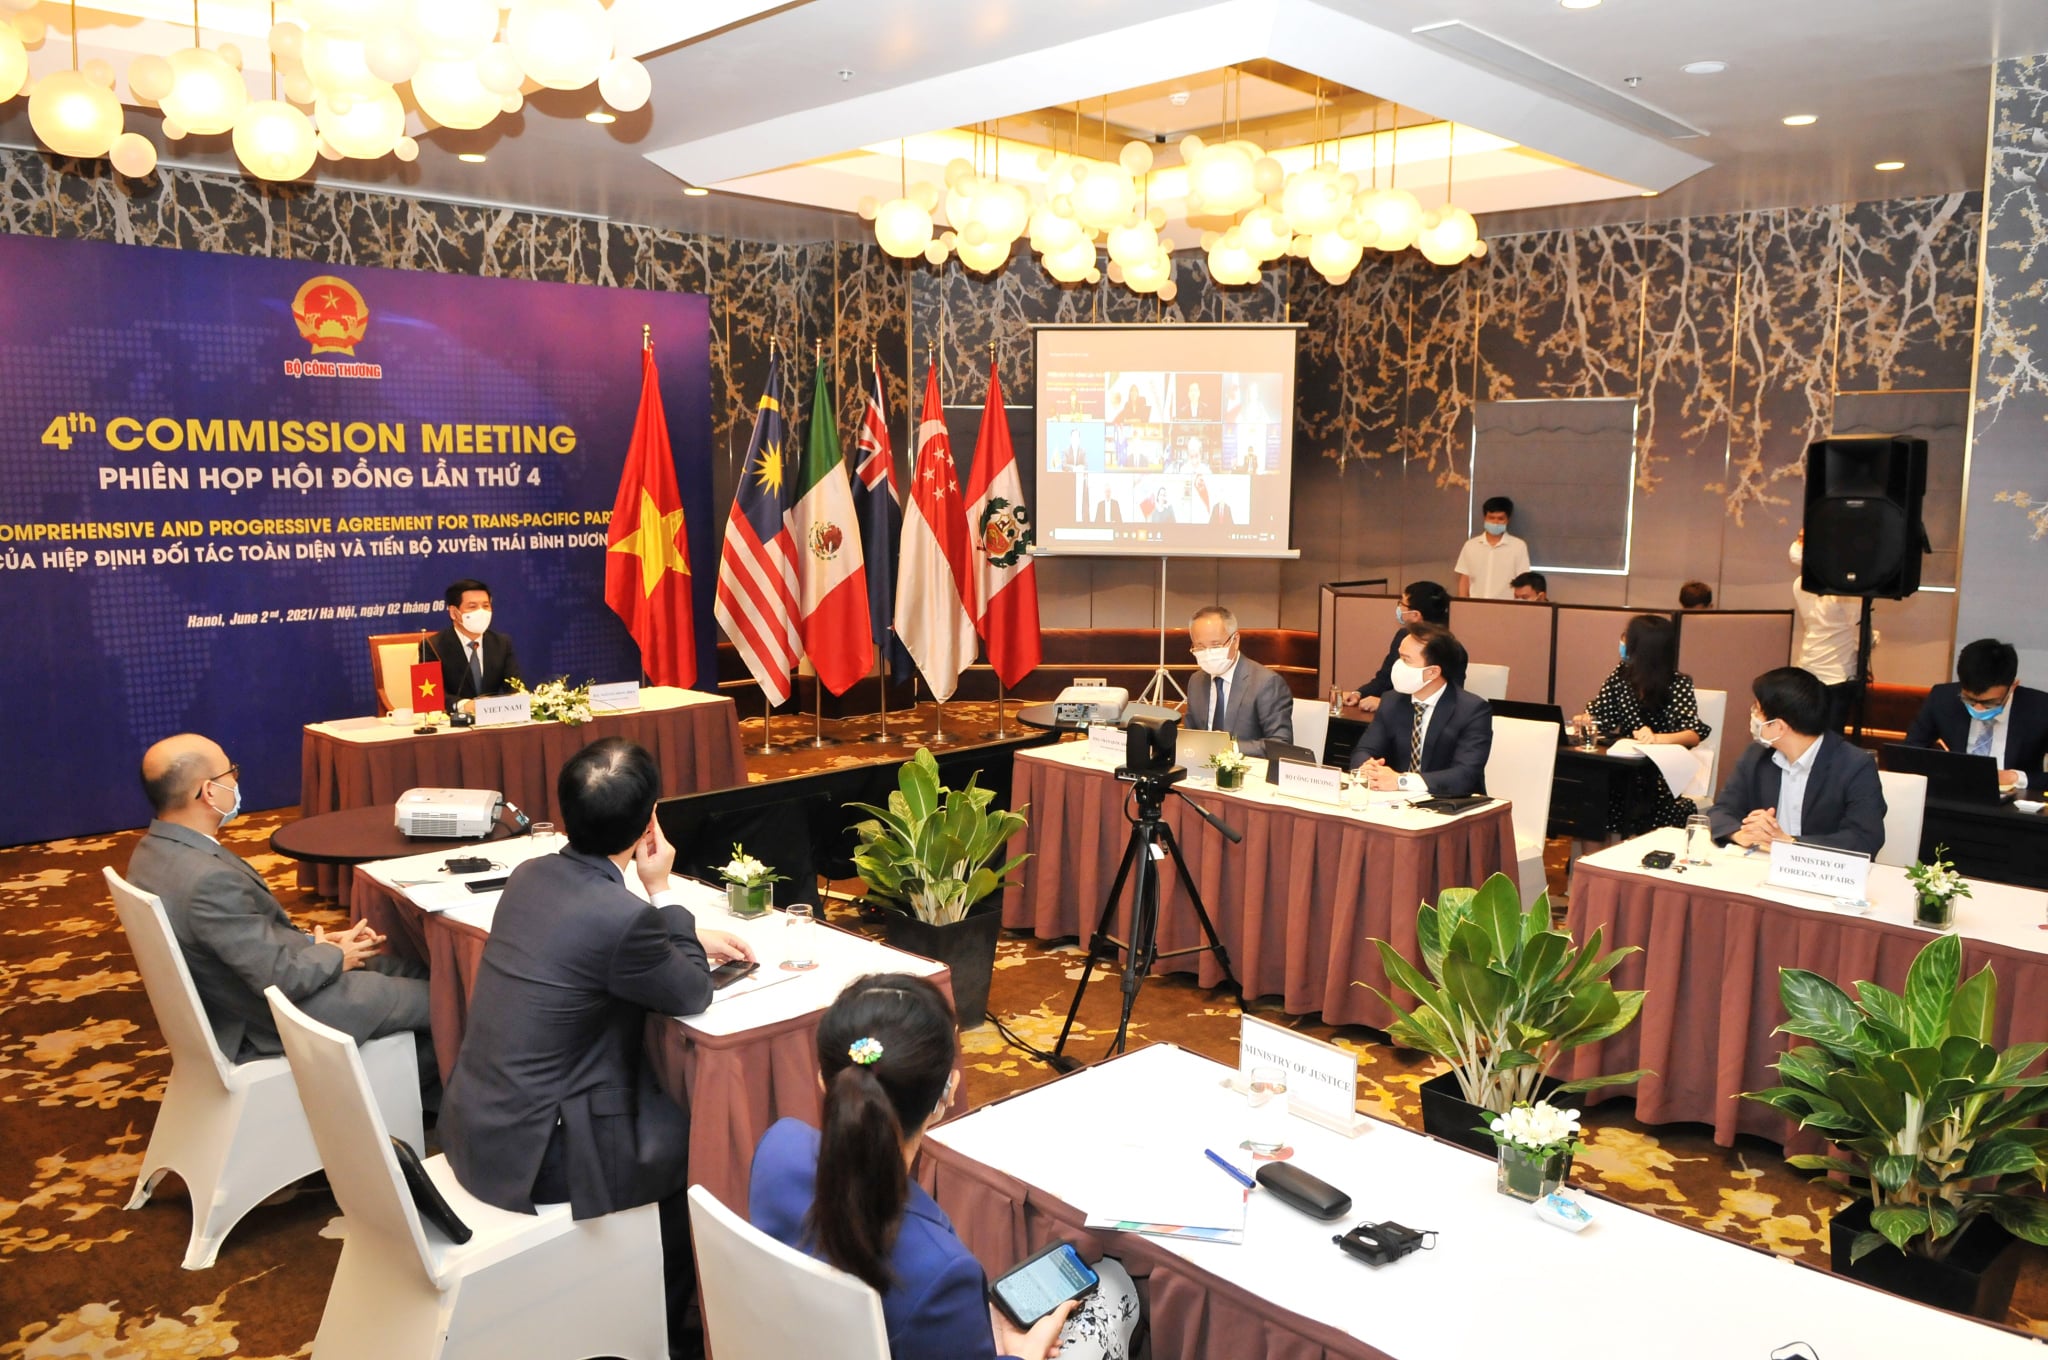 Đoàn Việt Nam tham dự phiên họp tại điểm cầu Hà Nội